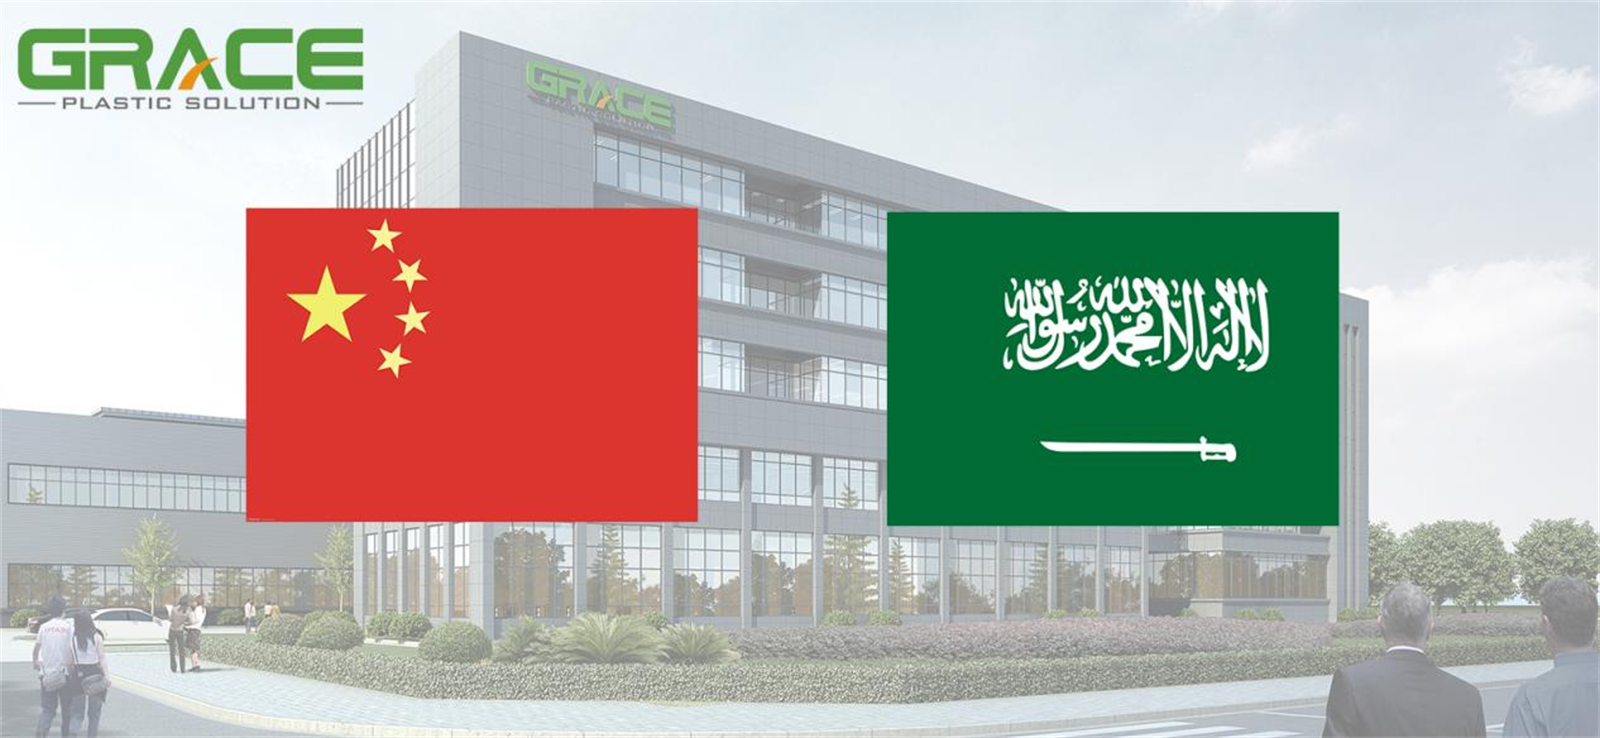 Grace i największa spółka notowana na giełdzie rurociągów PE w Arabii Saudyjskiej podpisały umowę na budowę rurociągu PE o średnicy 1200 mm i dużej grubości ścianek